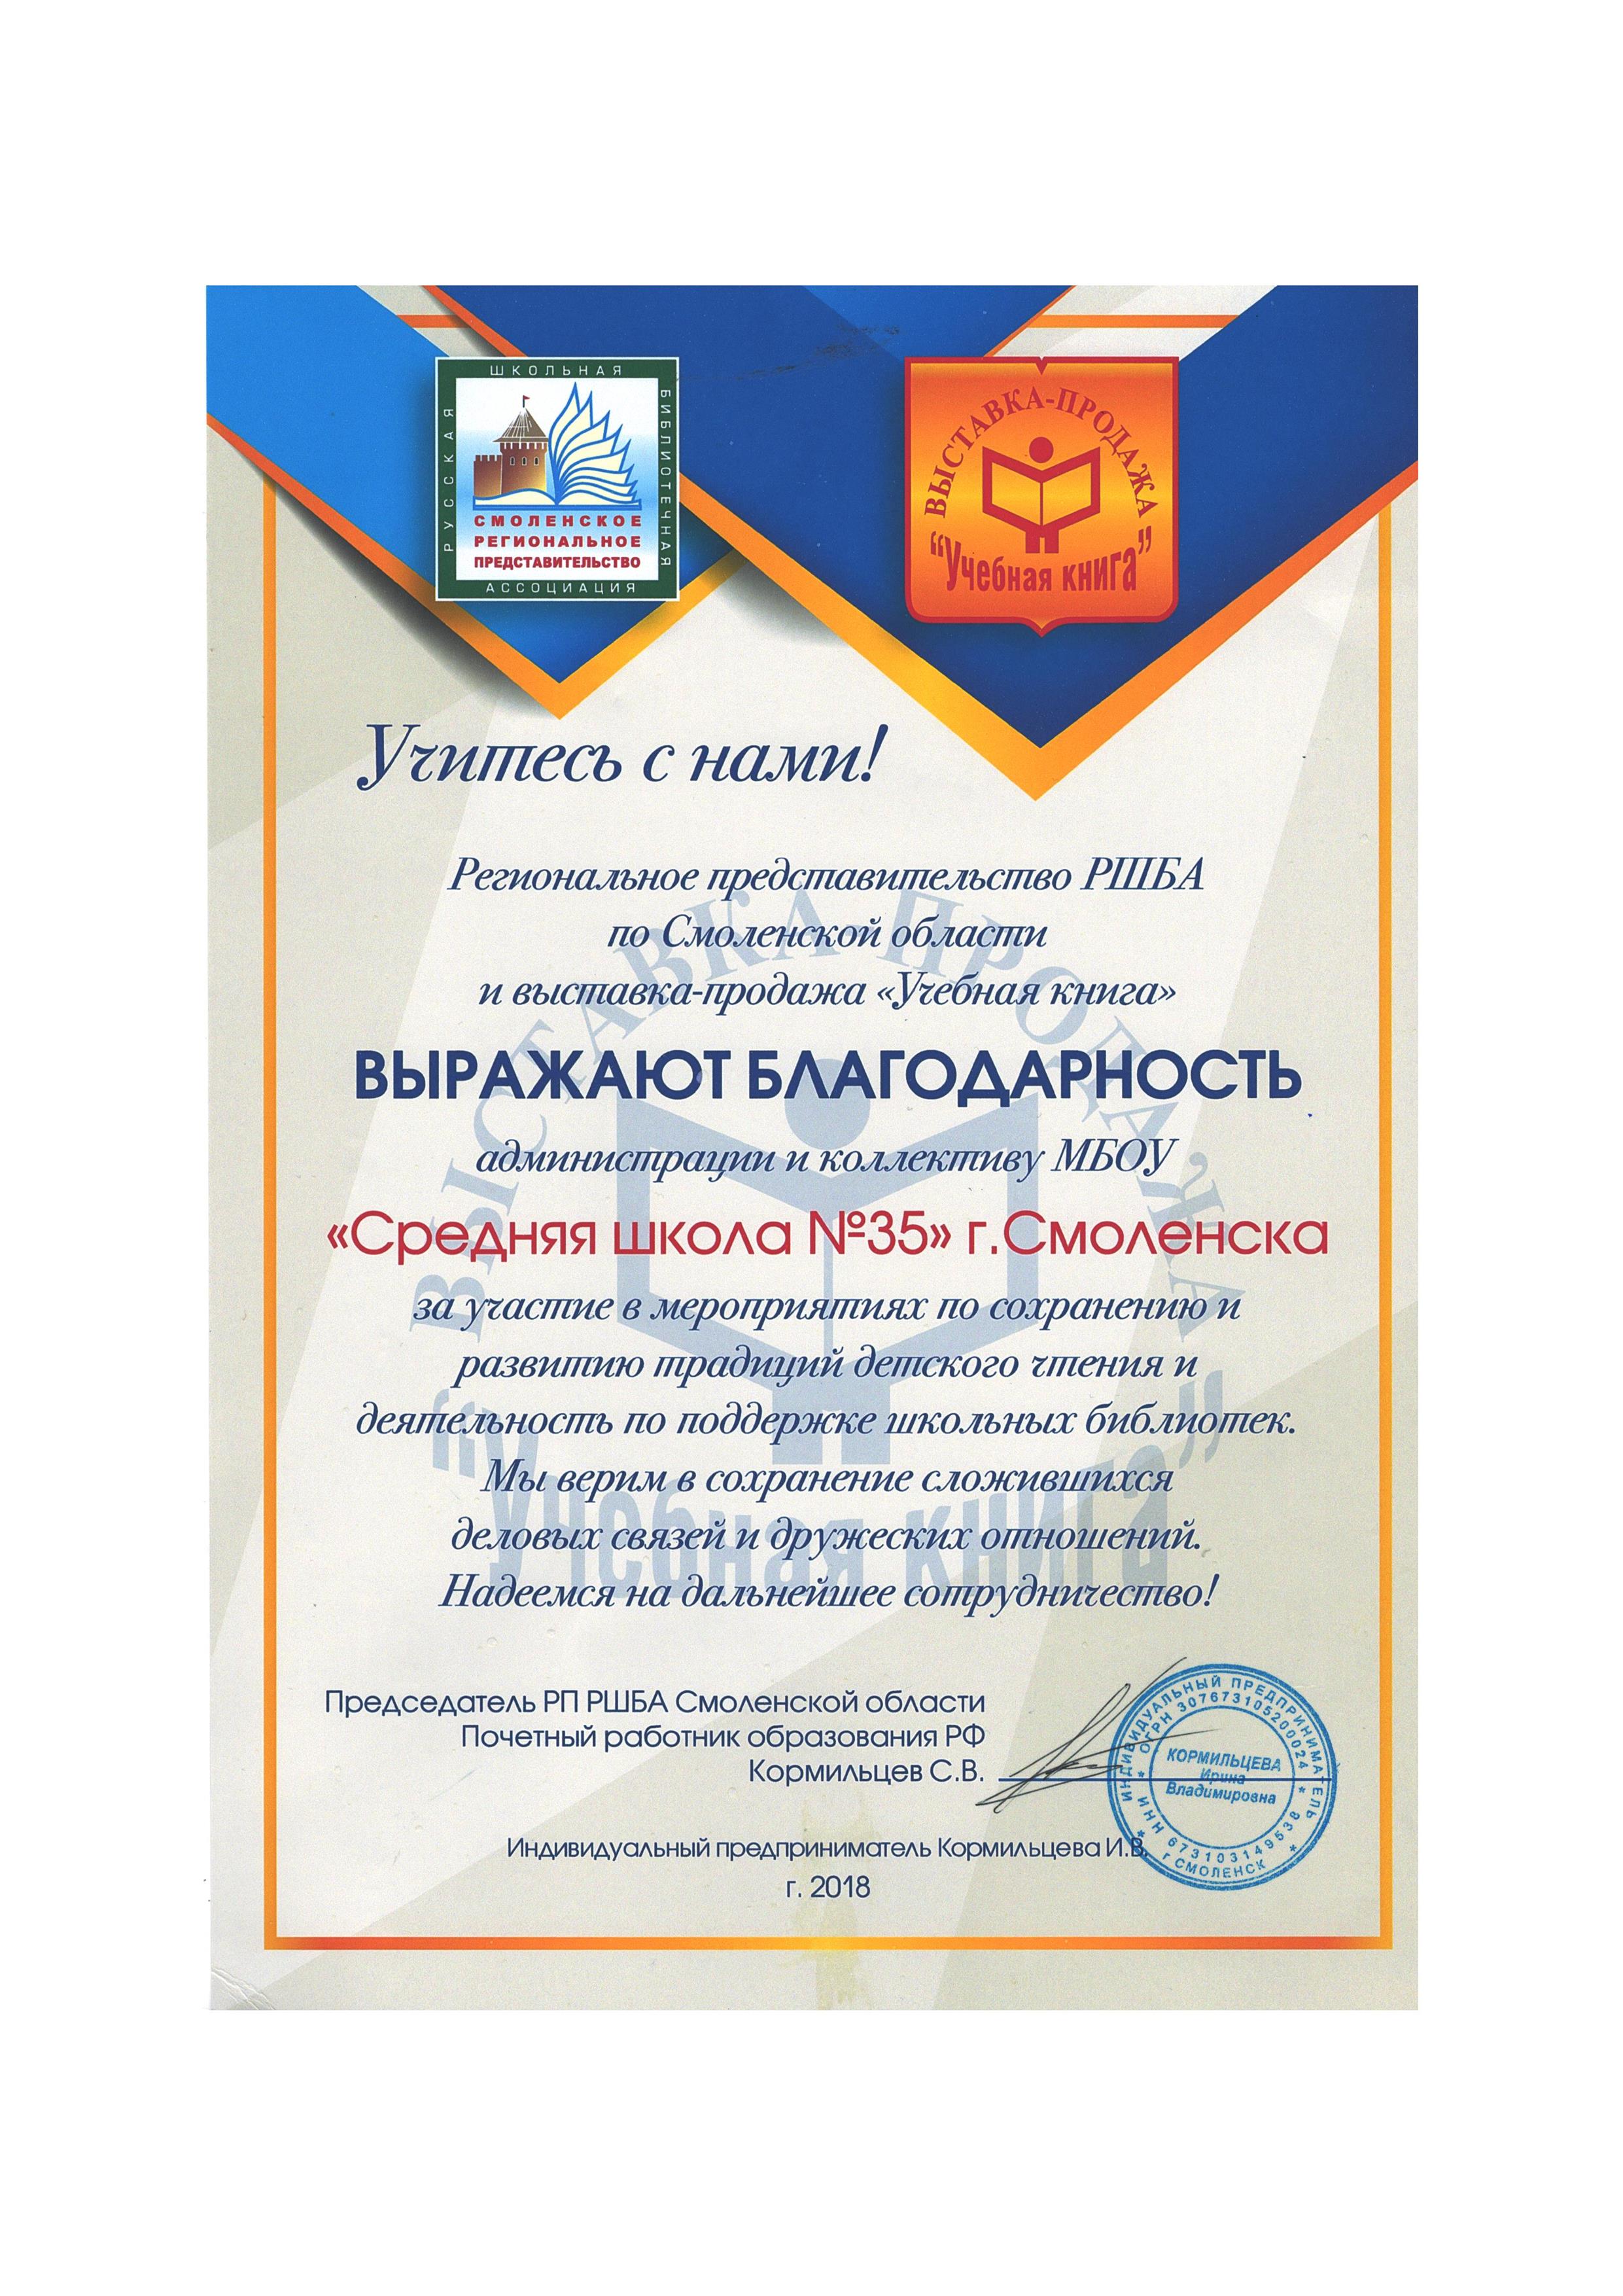 Благодарность регионального представительства РШБА по Смоленской области за развитие традиций детского чтения